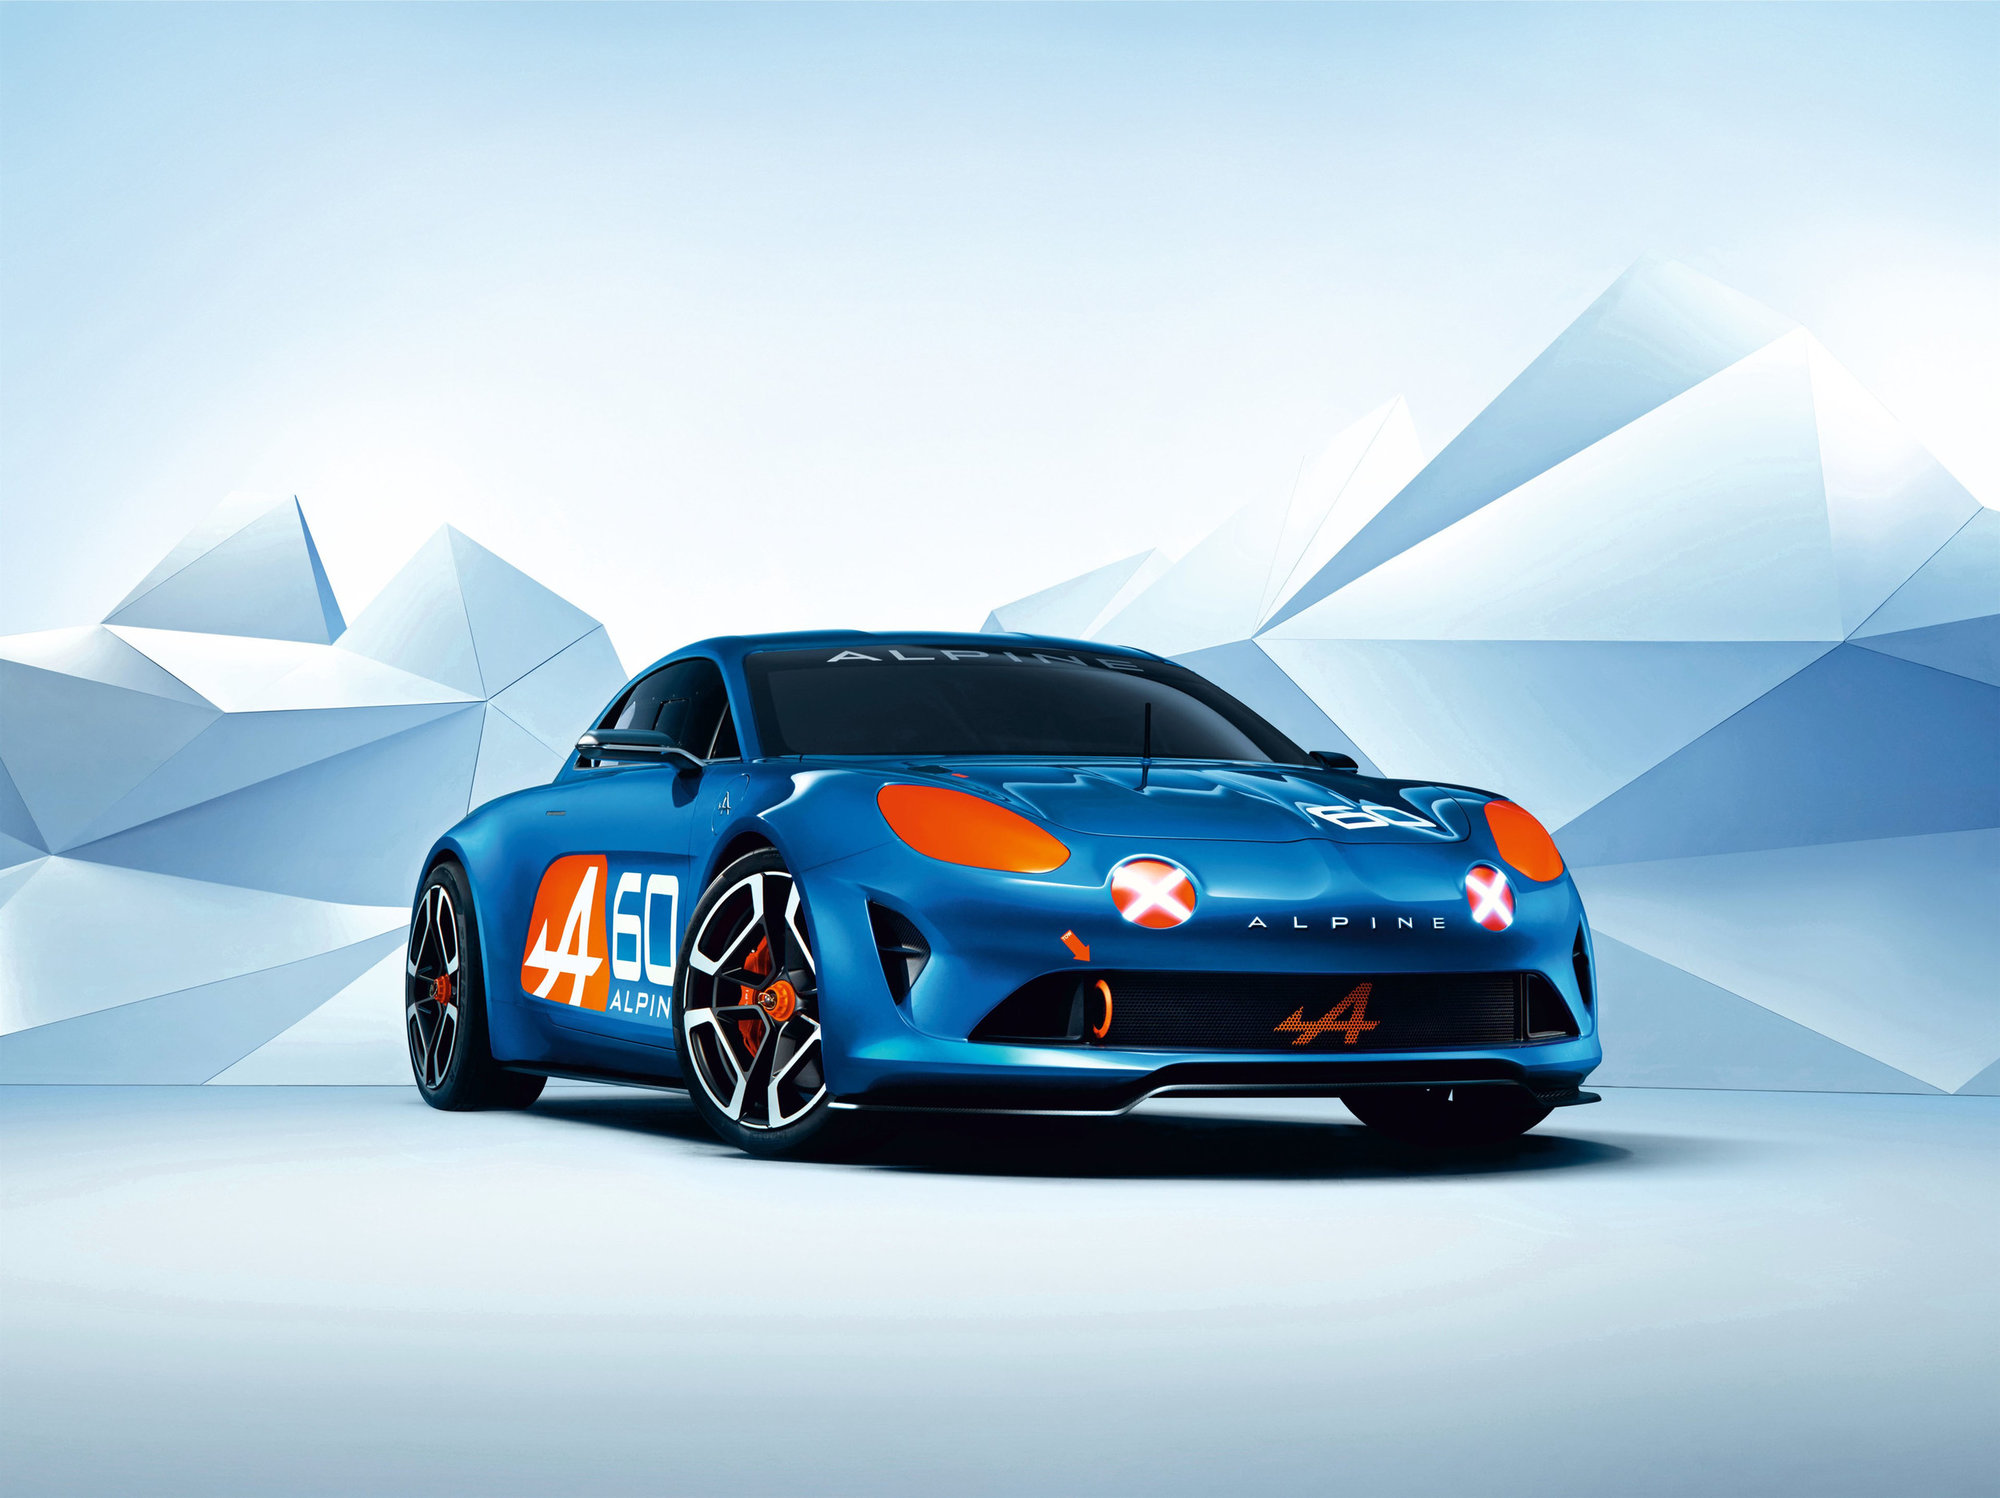 FOTO: Nový vůz Alpine byl představen v Le Mans